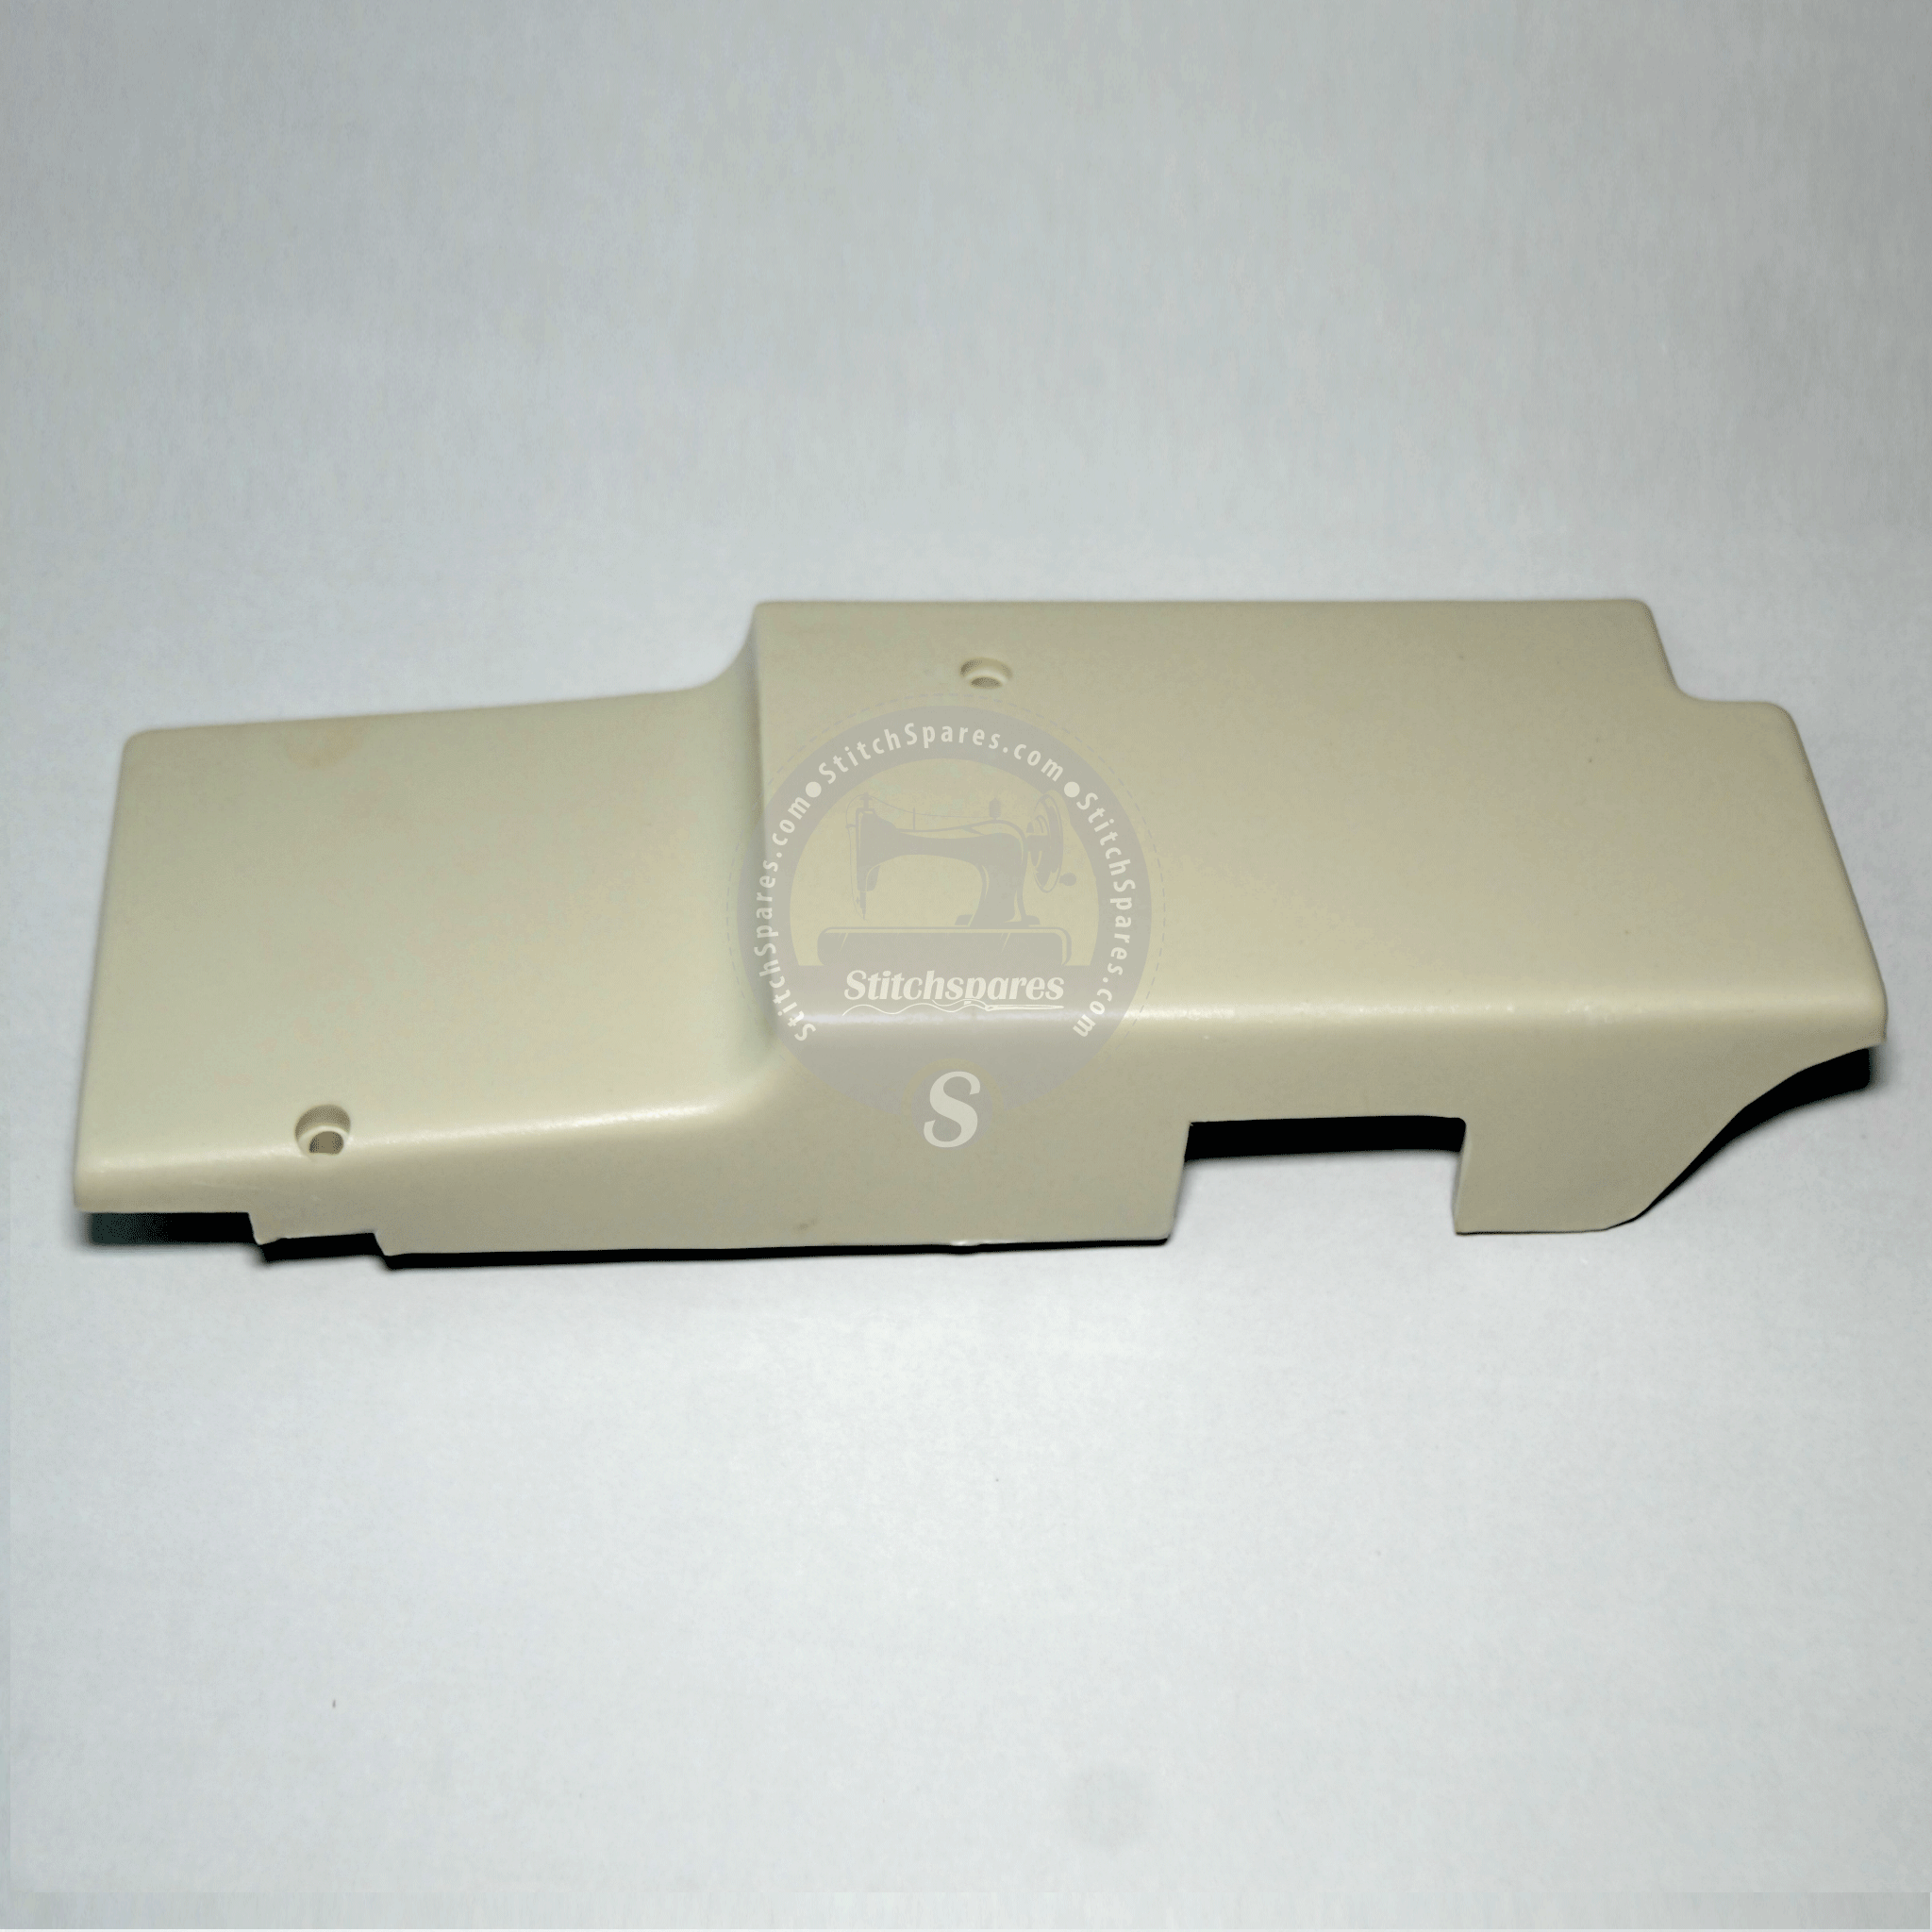 B1139-771-000 cubierta lateral del marco Juki Lbh-781 pieza de repuesto para máquina de coser con orificio de botón